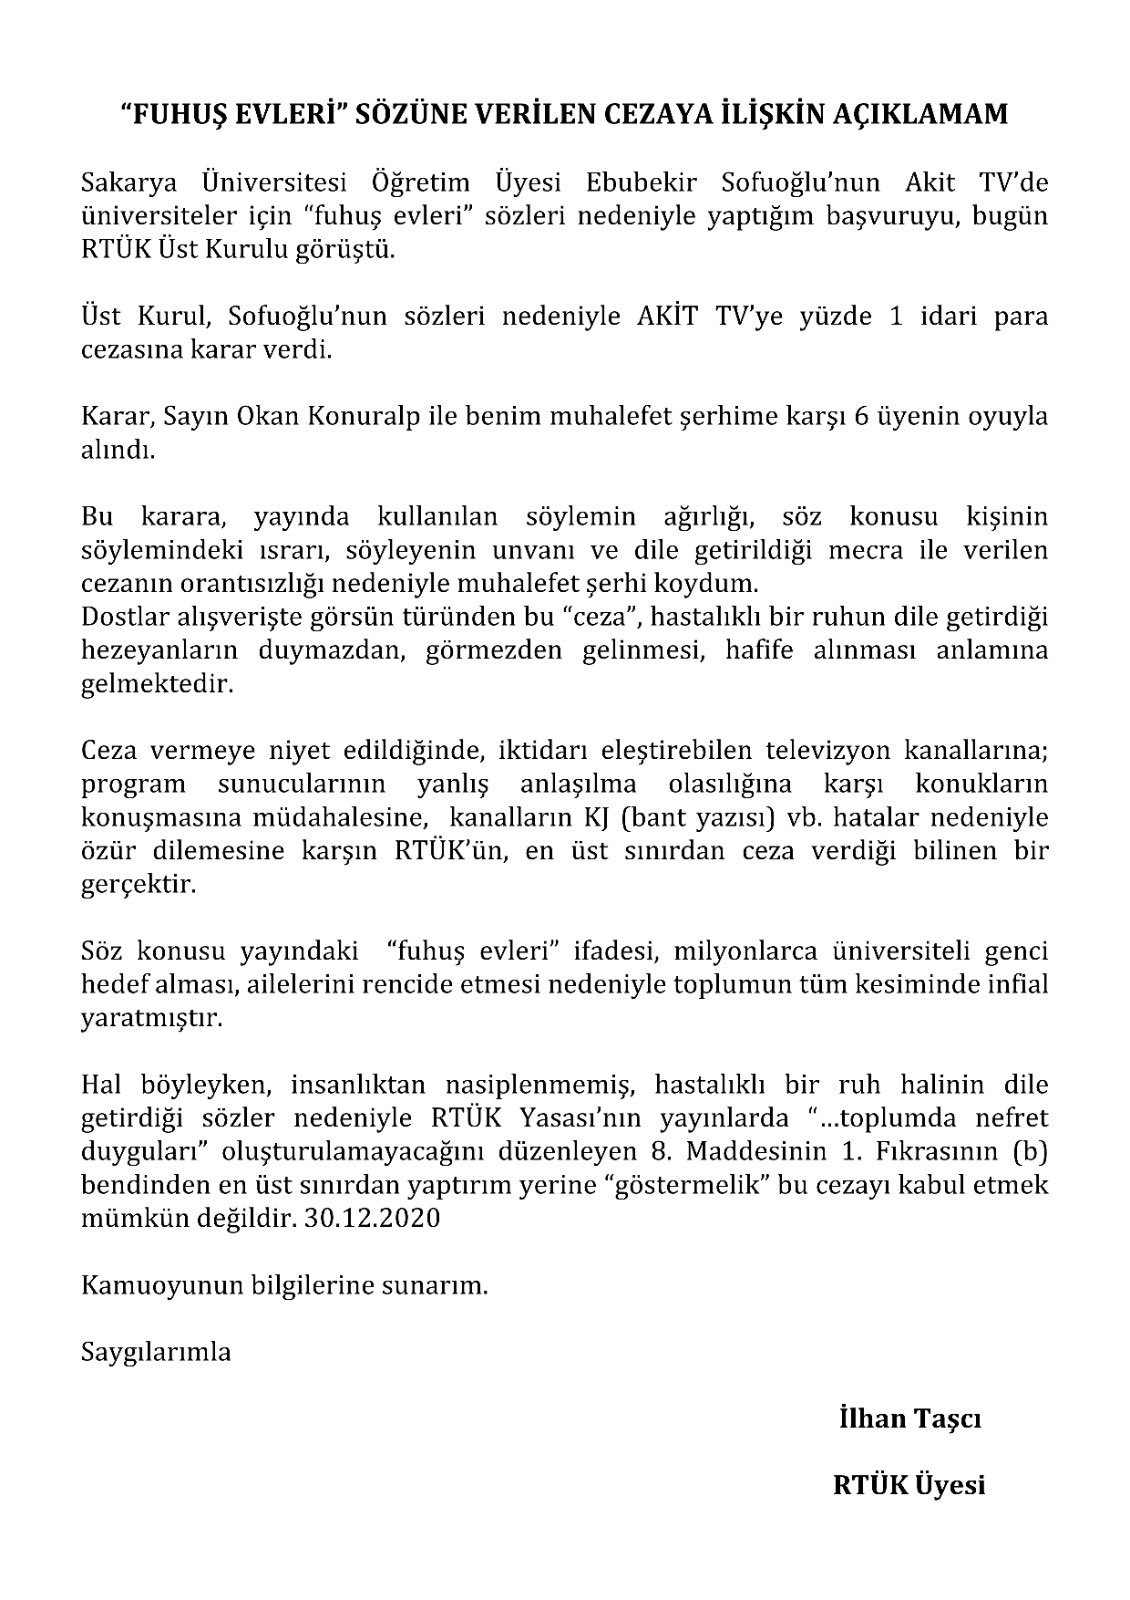 RTÜK'ten Akit TV'ye Ödül Gibi Ceza: Fuhuş Yuvası Demişti.. - Resim: 2